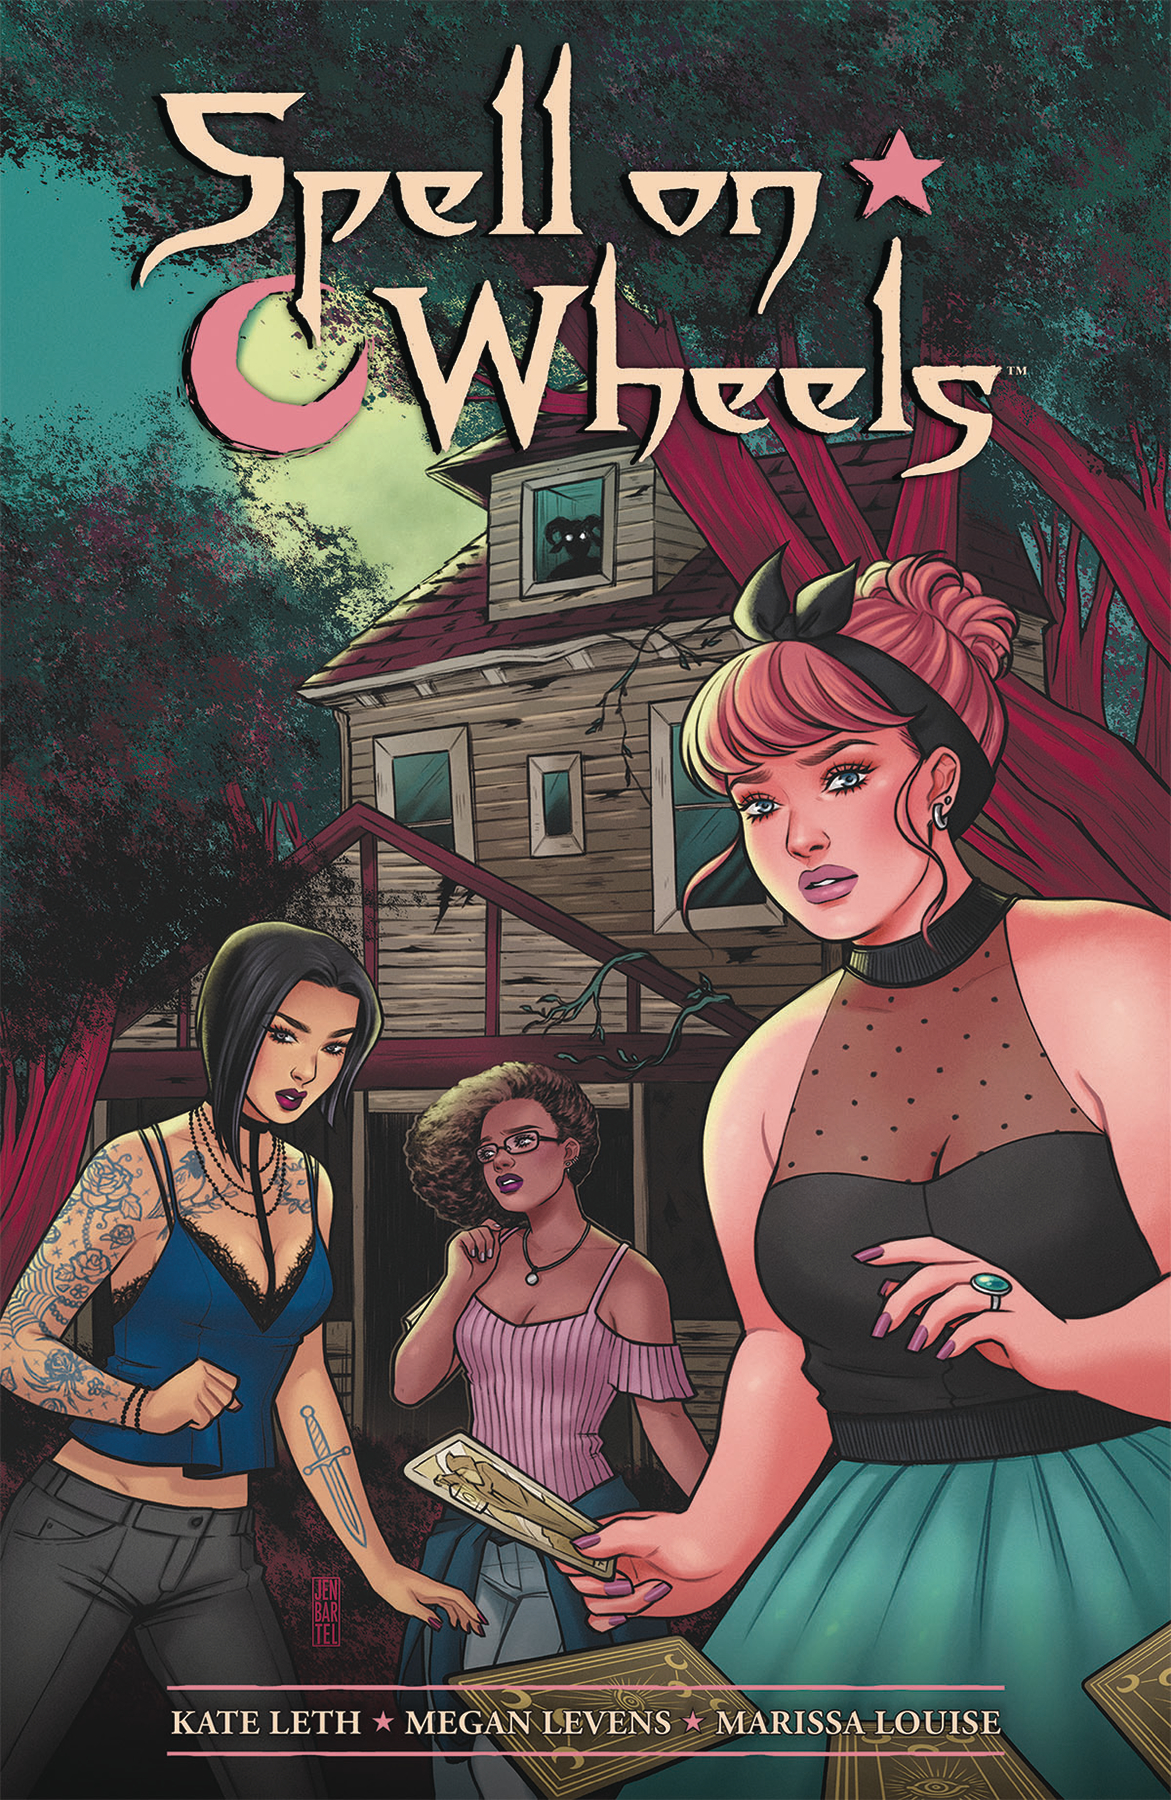 Spell On Wheels Graphic Novel Volume 1